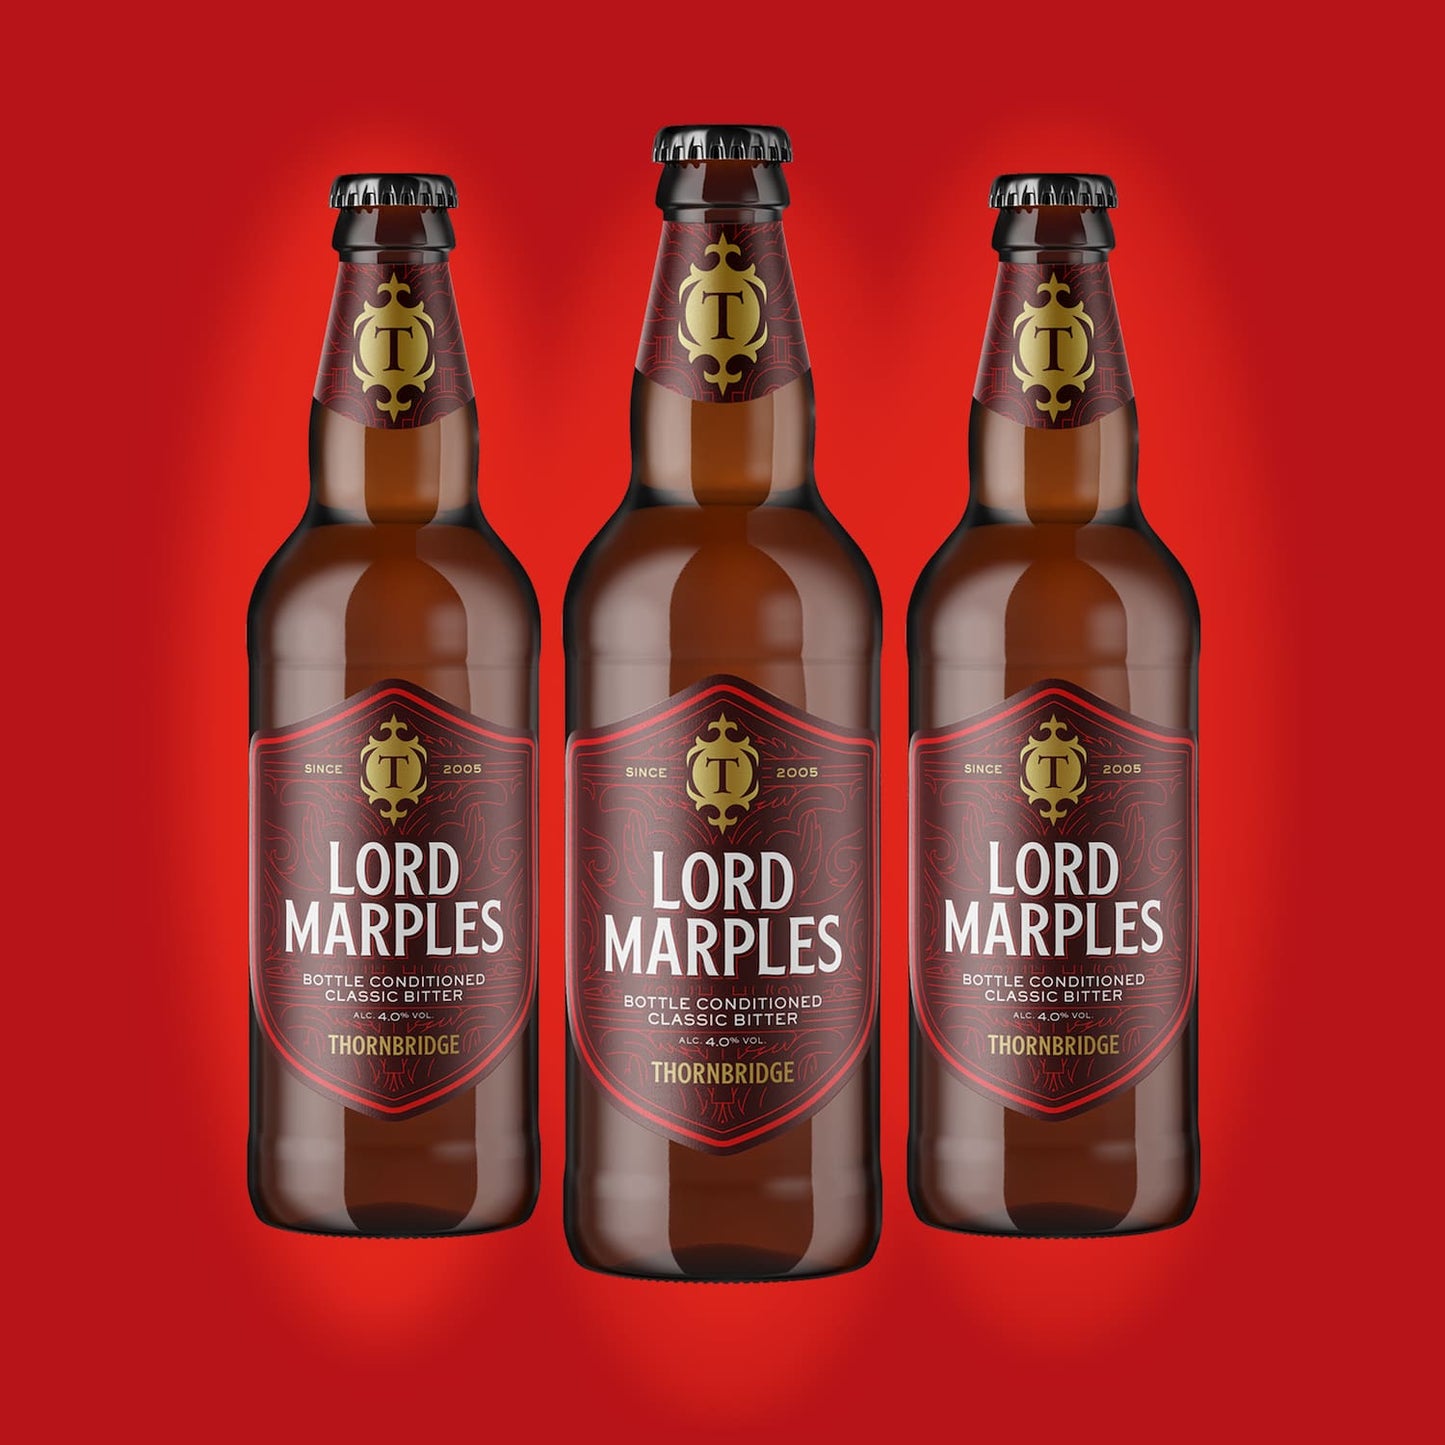 Lord Marples 4% Classic Bitter 8 x 500ml bottles Beer - Case Bottle Thornbridge